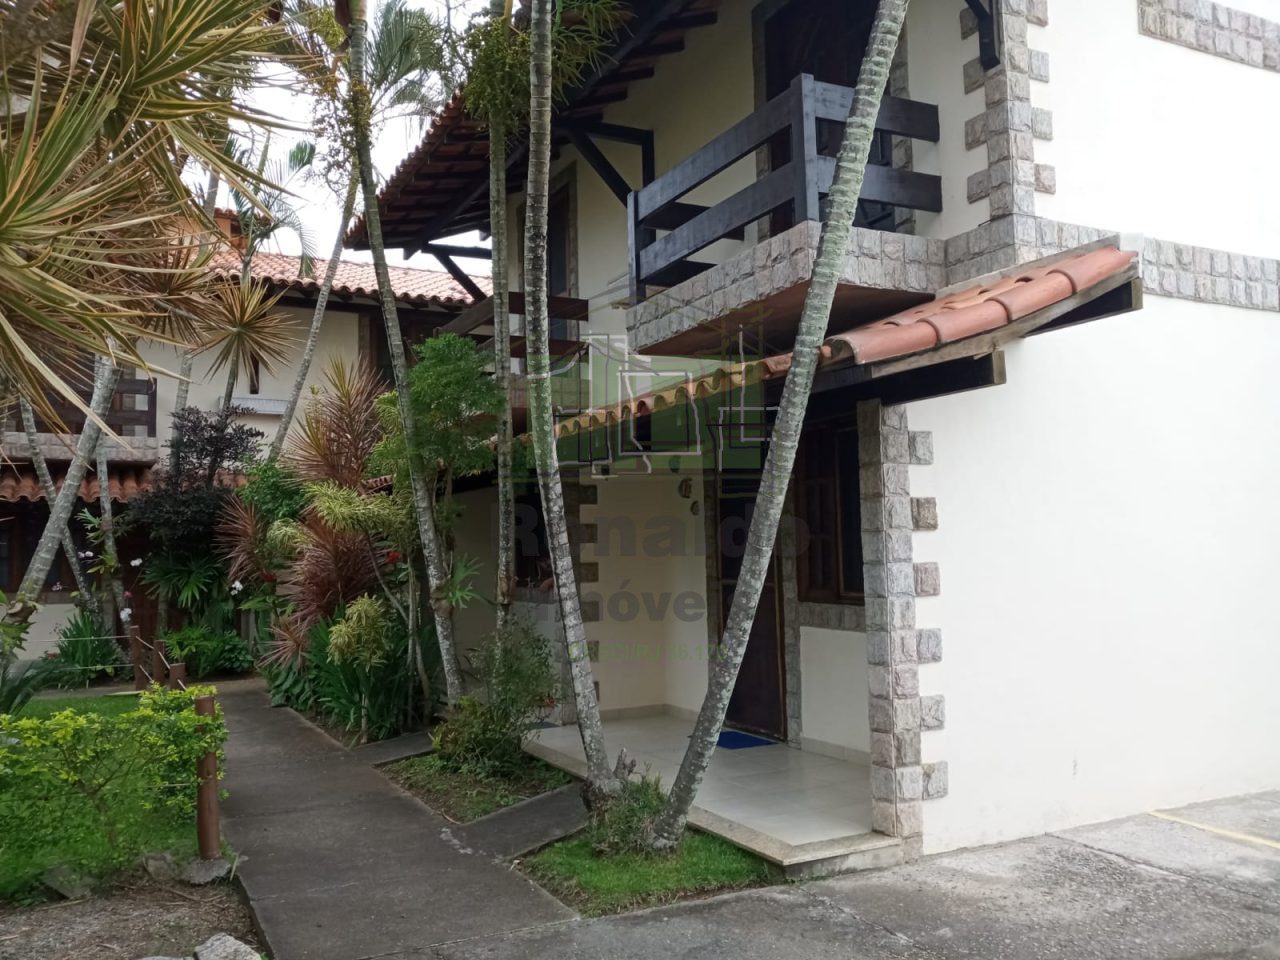 R320 – Casa em condomínio, 02 quartos / 01 suíte, Peró – Cabo Frio – RJ